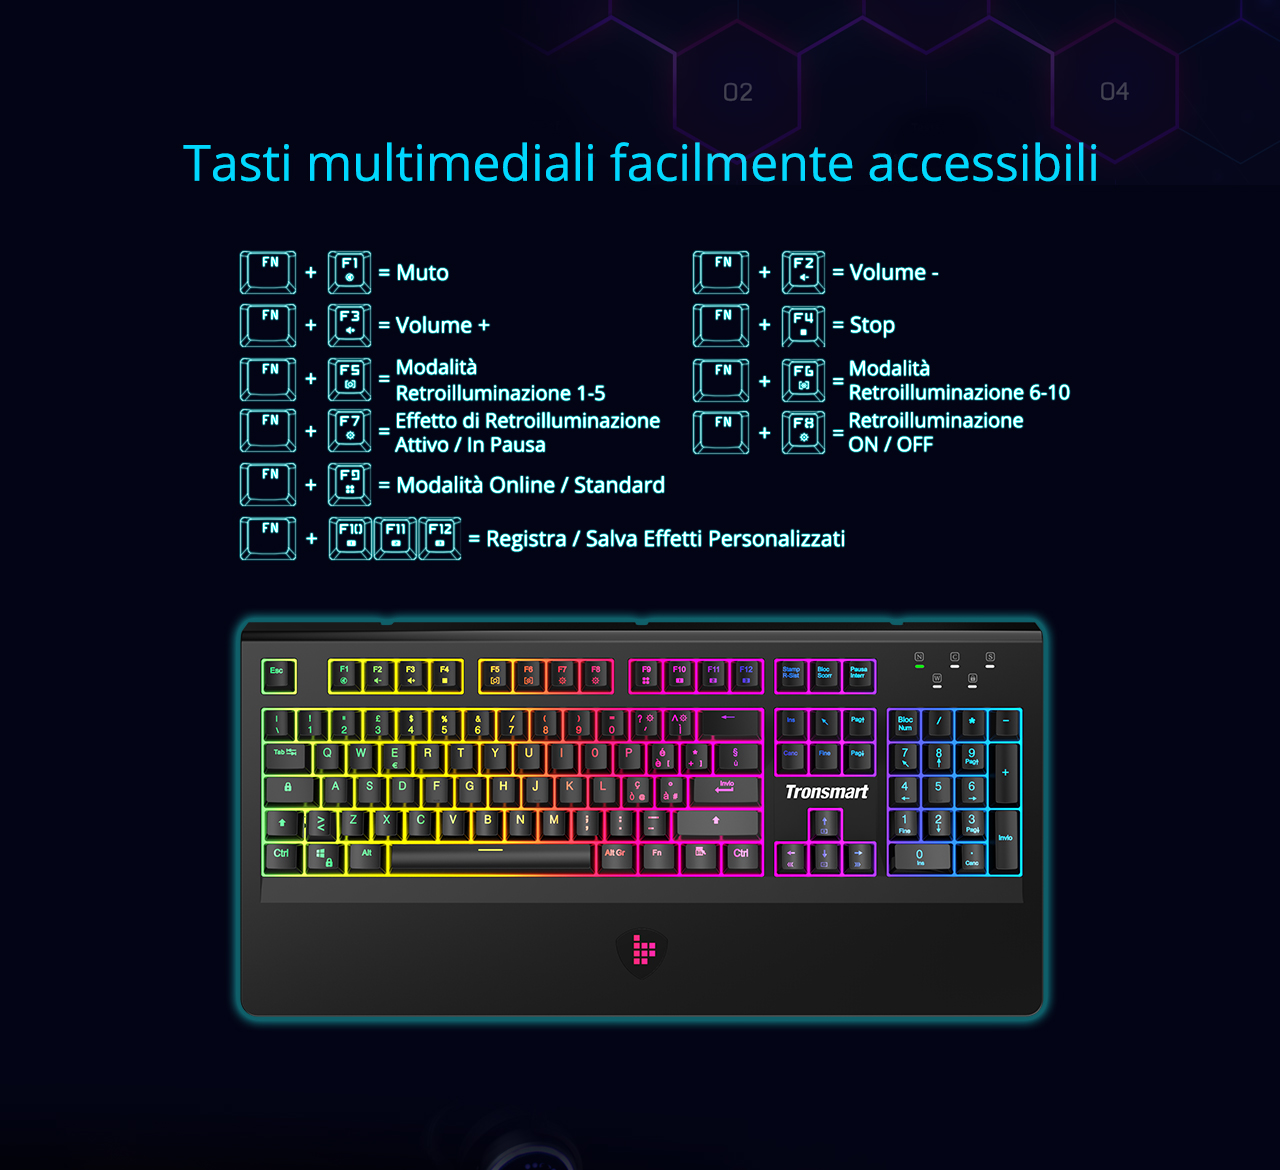 Tronsmart TK09R Mekaniskt speltangentbord med RGB-bakåtmakroknappar Blå omkopplare för spelare - IT-layout